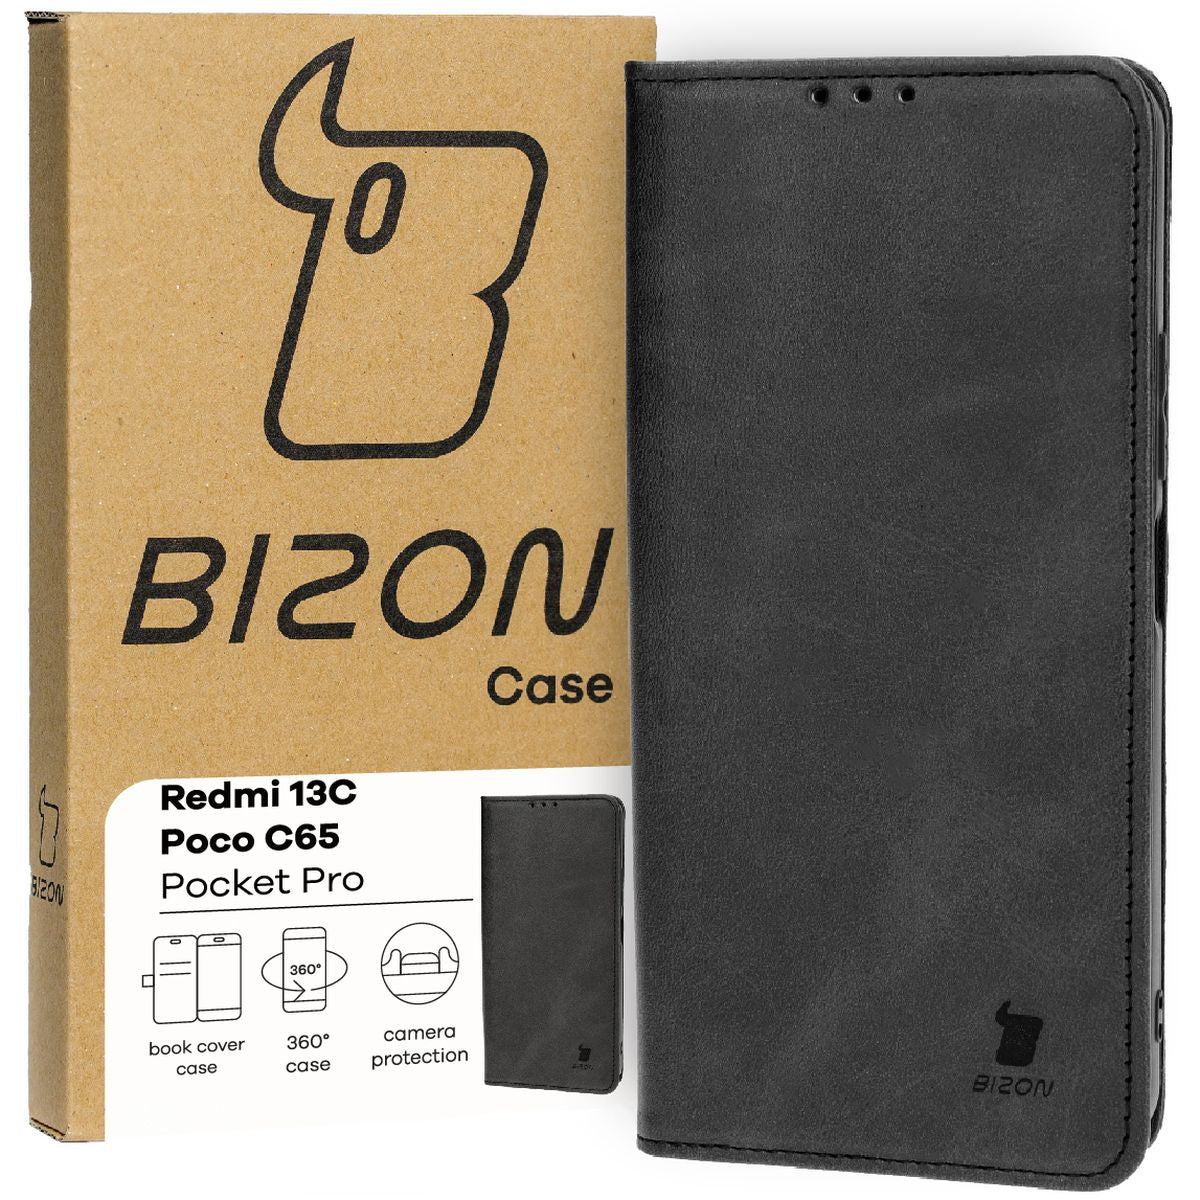 Schutzhülle für Redmi 13C / Poco C65, Bizon Case Pocket Pro, Schwarz